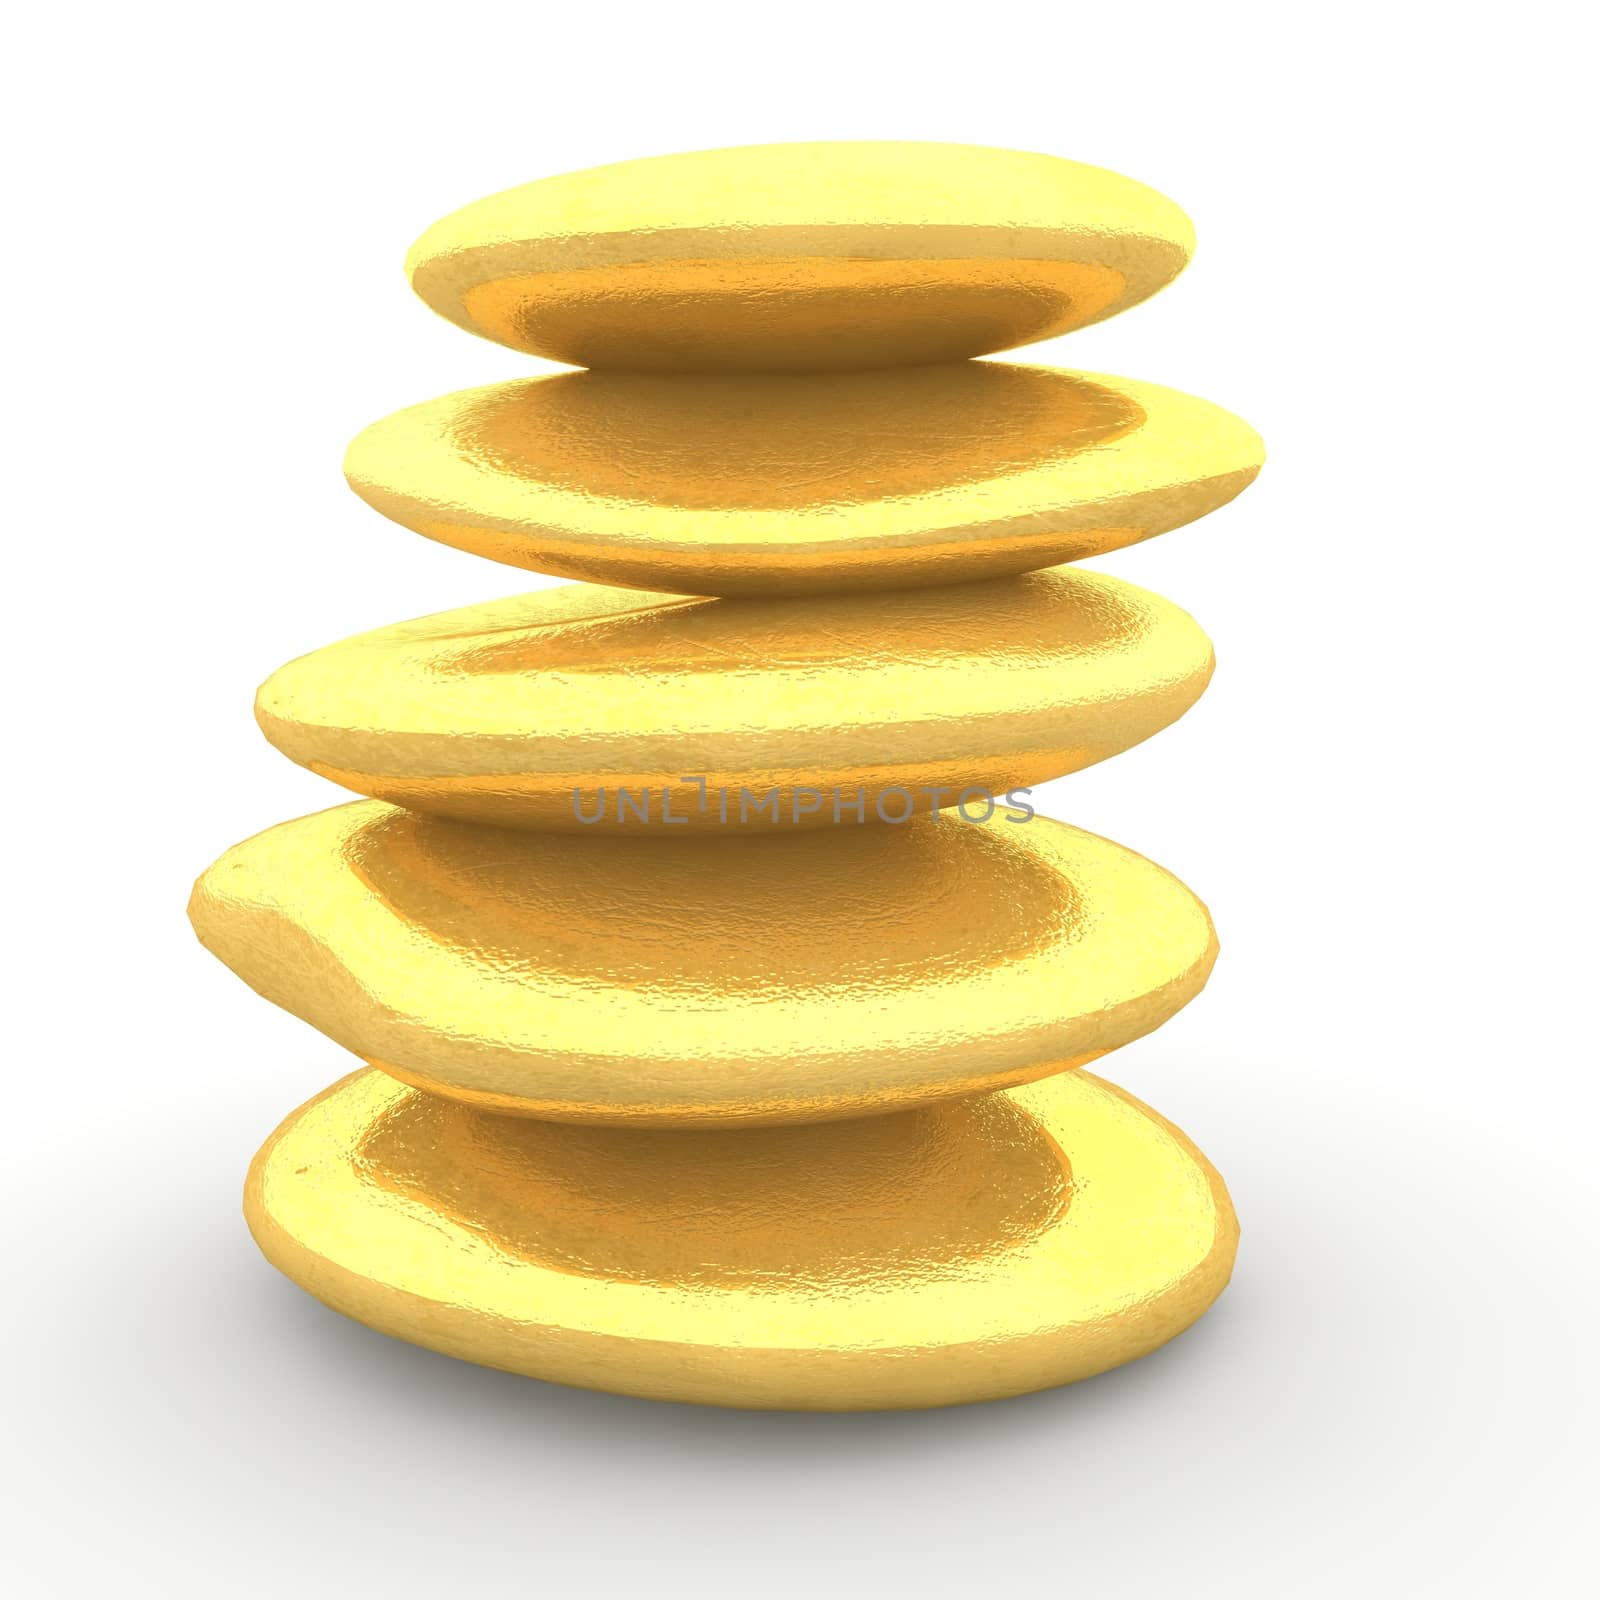 The golden stones by 3DAgentur